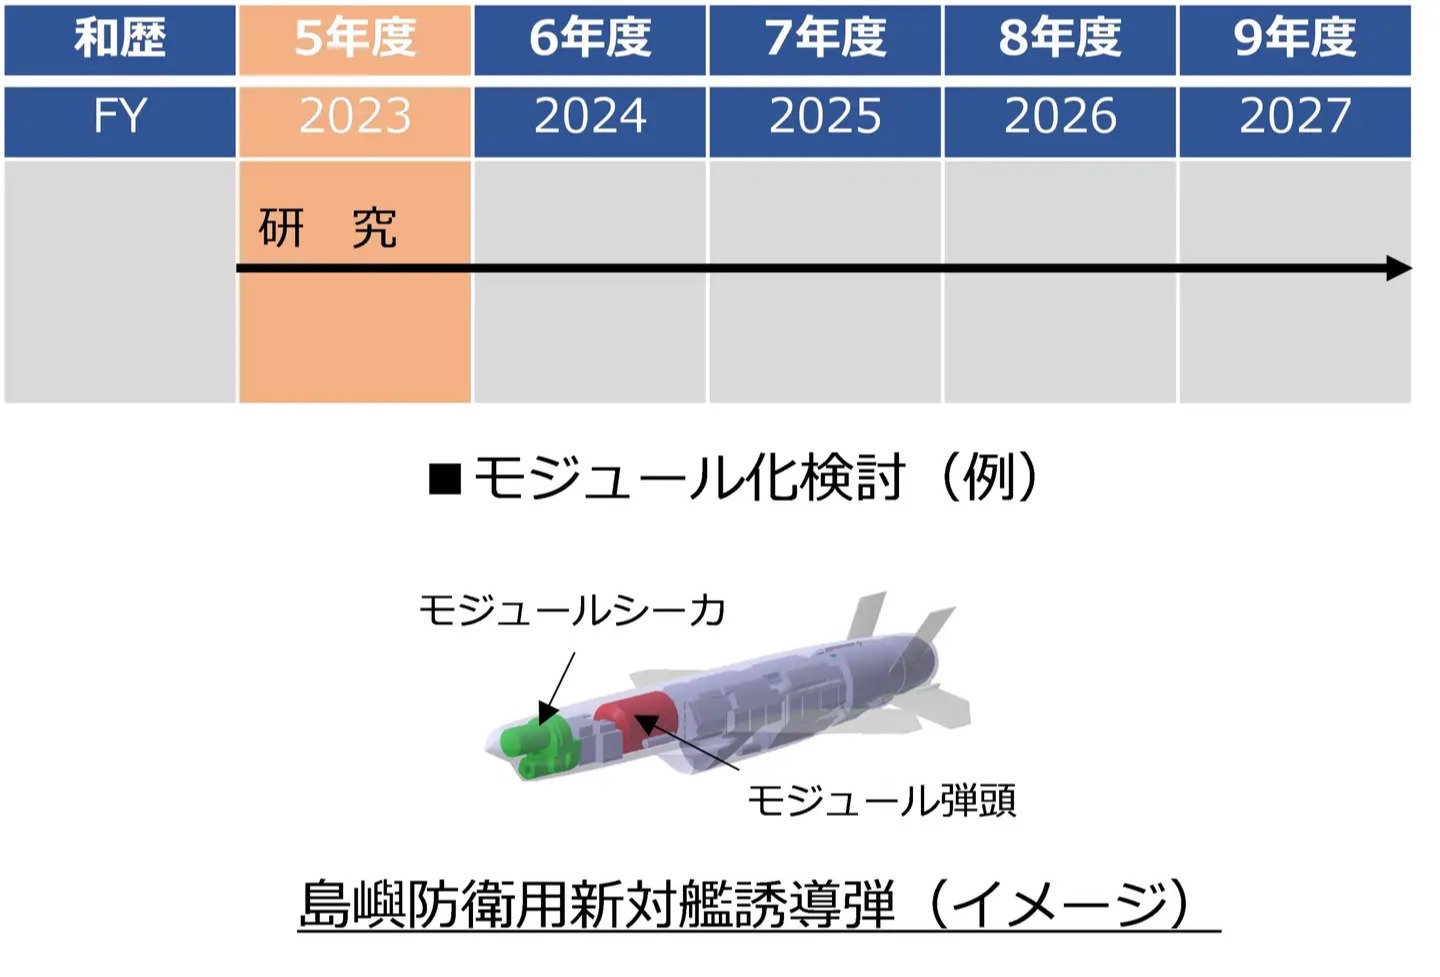 Japonya'nın yeni gemisavar füzesi ortaya çıktı